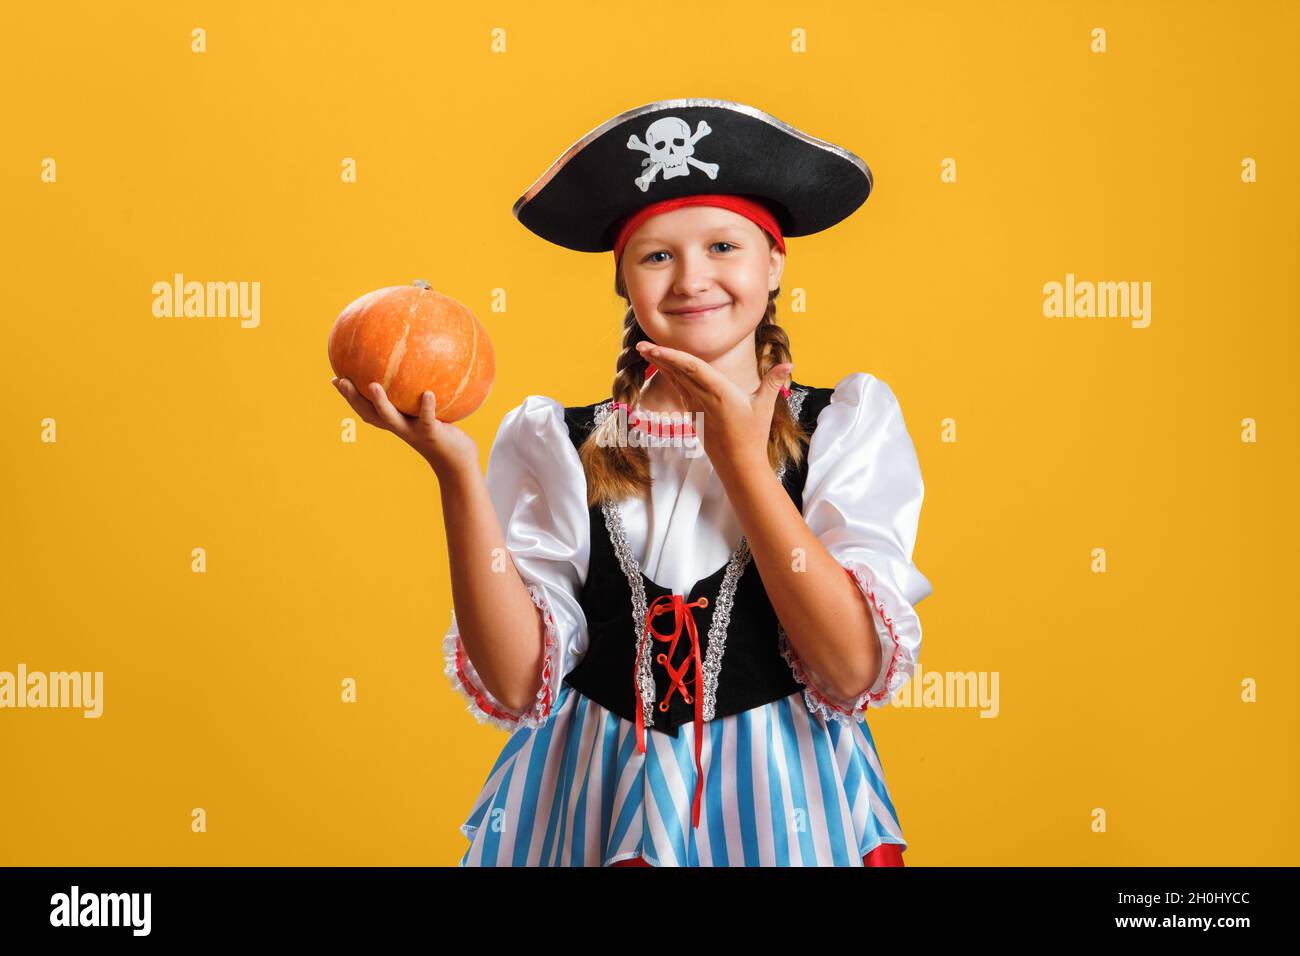 Halloween. Fröhliches Mädchen im Karnevalskostüm eines Piraten im Studio auf gelbem Hintergrund. Das Kind hält einen orangefarbenen Kürbis. Stockfoto